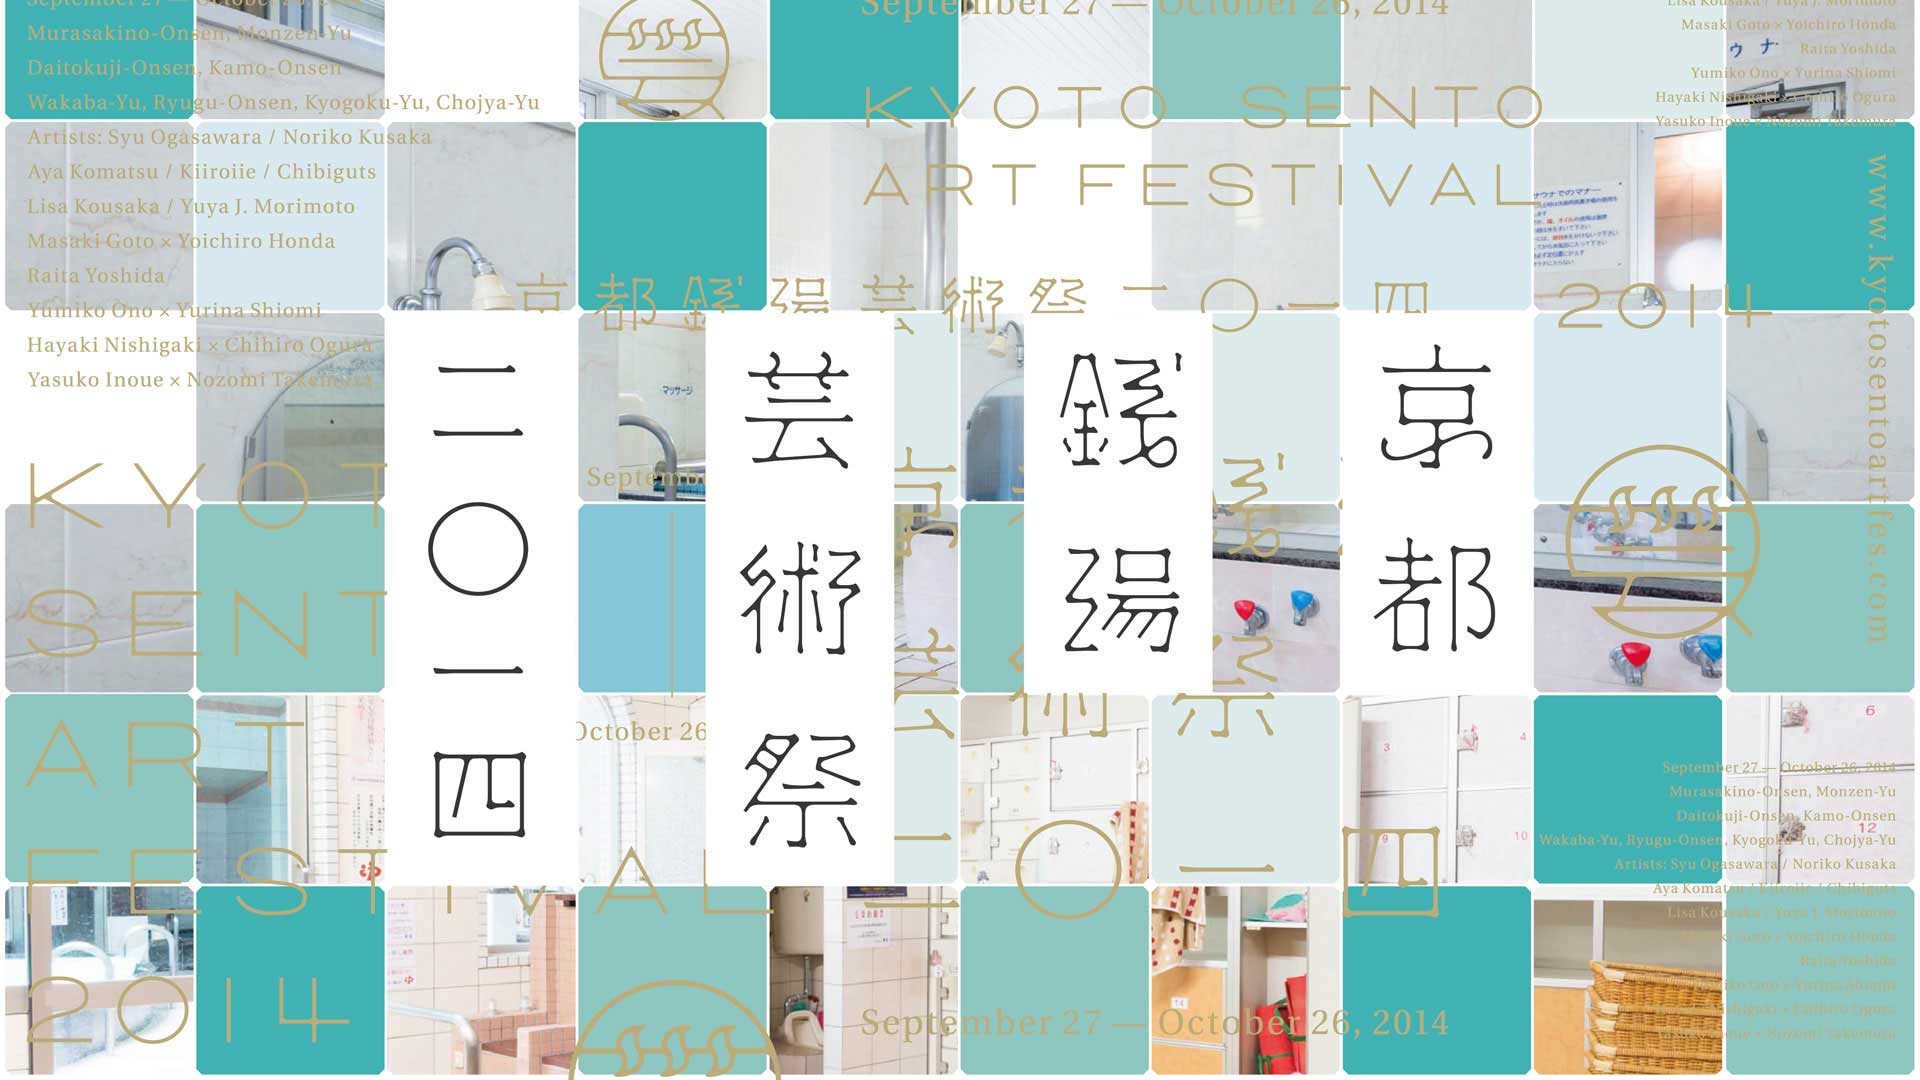 京都銭湯芸術祭2014 | Kyoto Sento Art Festival 2014